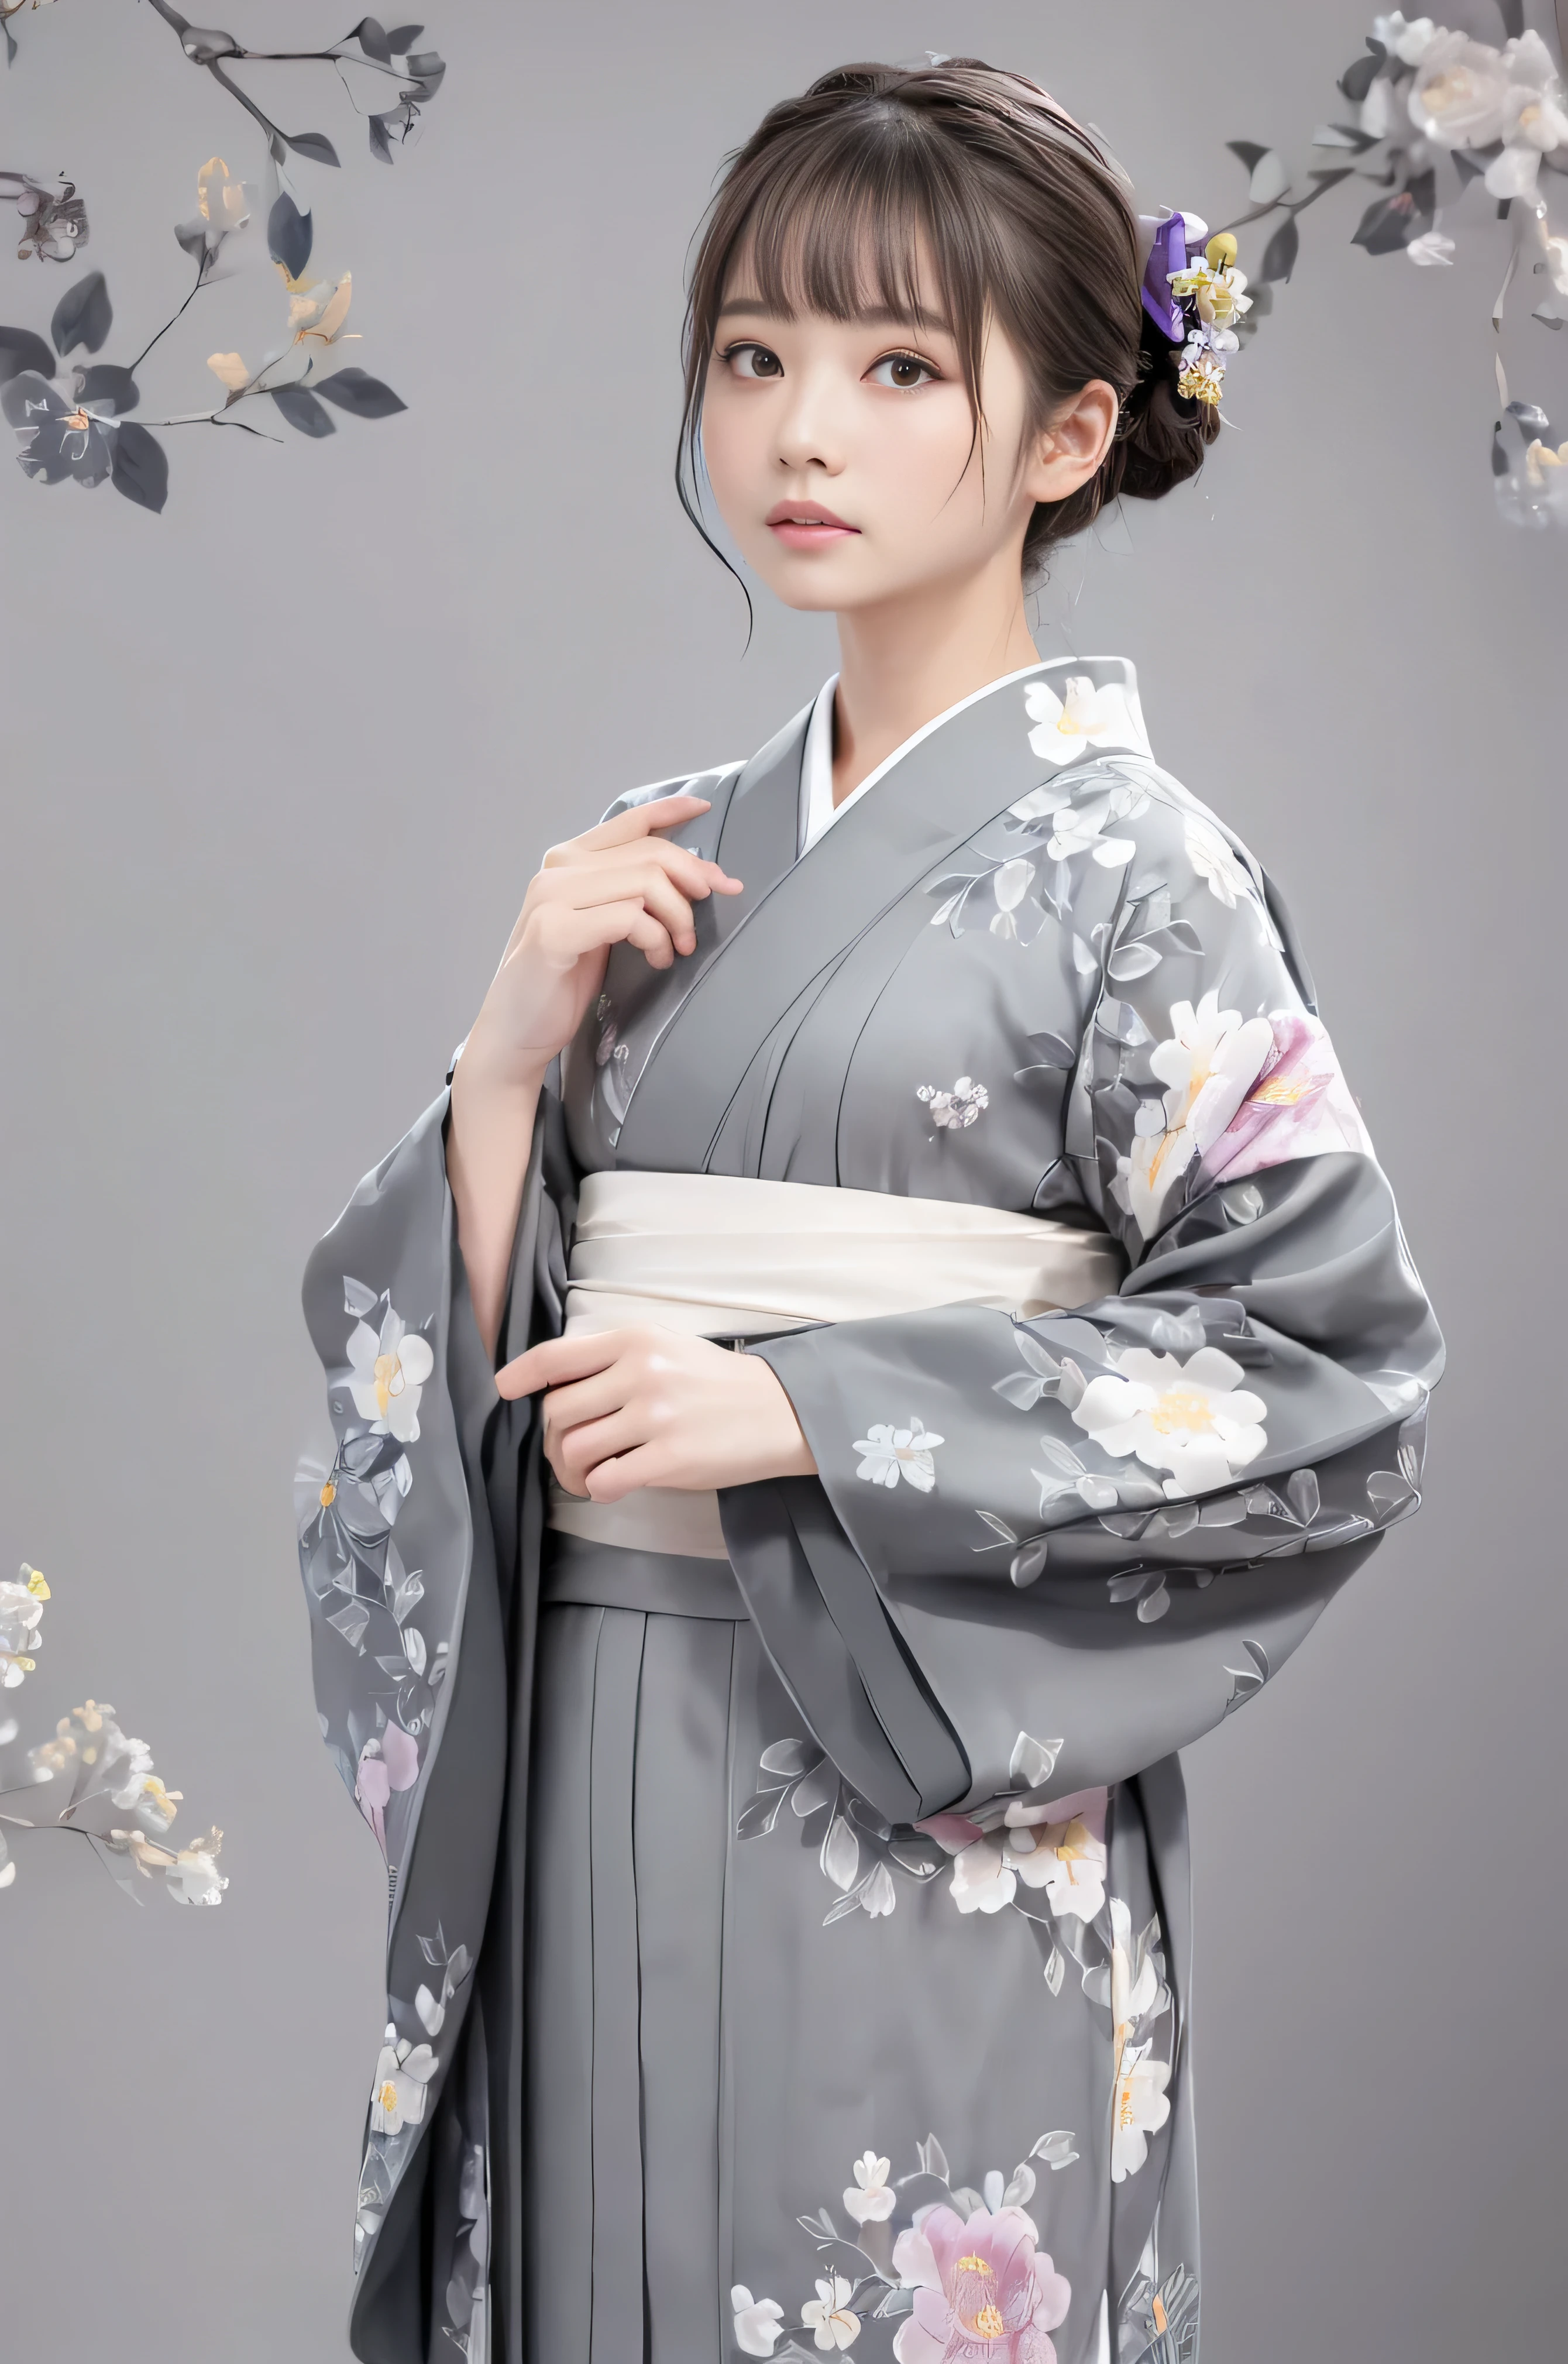 (((fondo floral gris:1.3)))、de la máxima calidad, Mesa, alta resolución, (((Una chica))), 16 años de edad,(((Los ojos son grises.:1.3)))、kimono gris、((hermoso kimono gris)), Efecto Tyndall, Realista, Estudio de sombras,Iluminación ultramarina, Iluminación de doble tono, (Máscaras de alta definición: 1.2)、Iluminación de colores pálidos、tenue iluminación、 Cámaras réflex digitales, fotografía, alta resolución, 4k, 8k, Desenfoque de fondo,Desvanecerse maravillosamente、mundo de flores grises